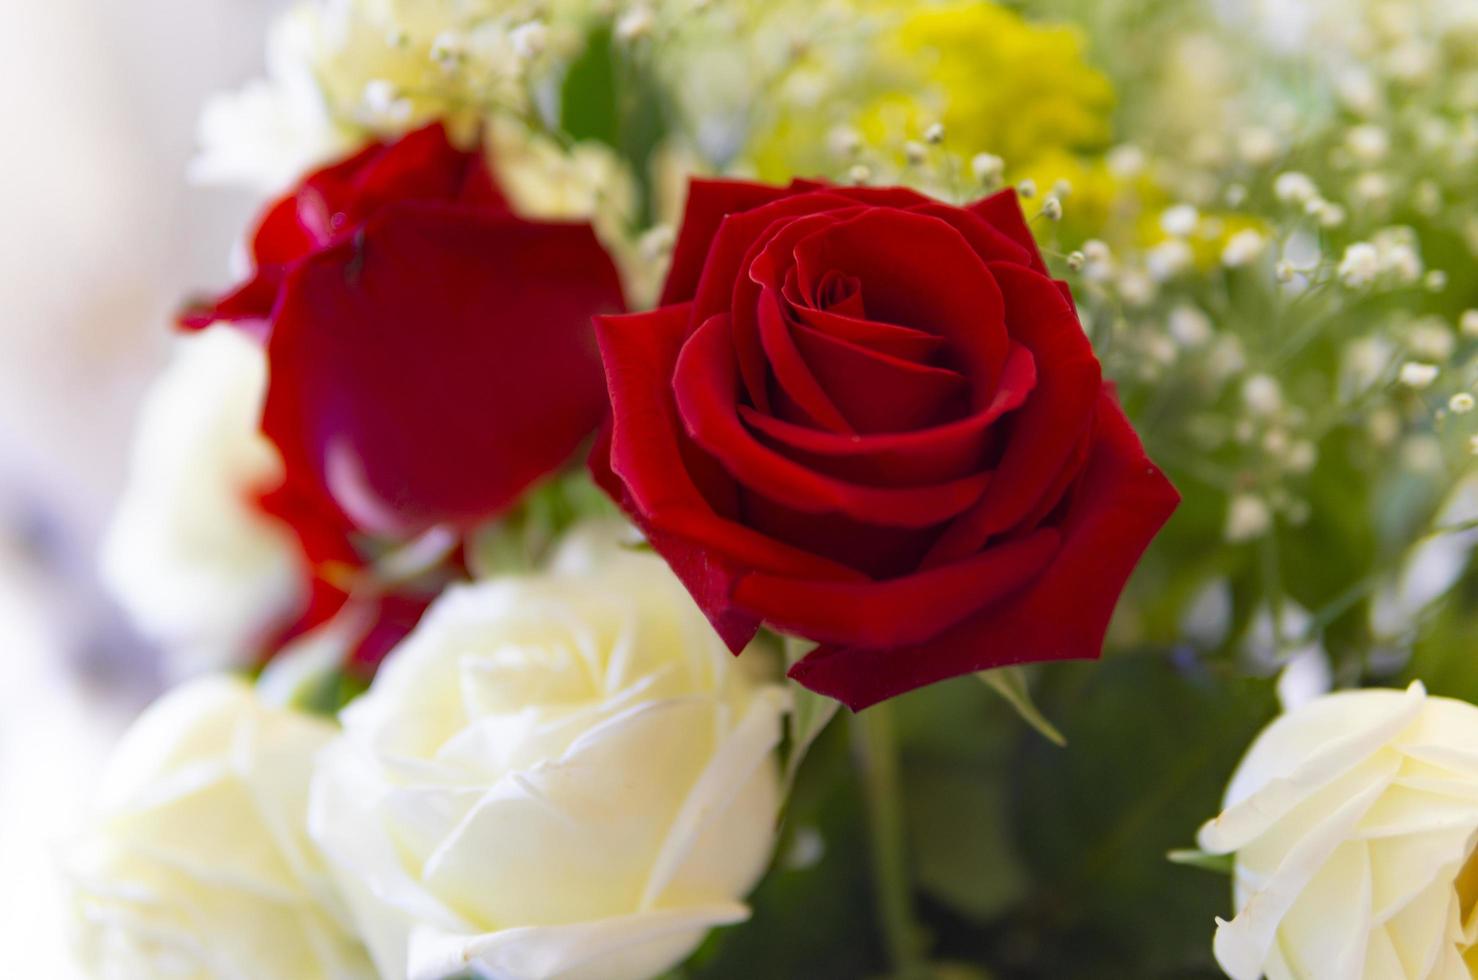 rode en witte roos bloemstuk foto